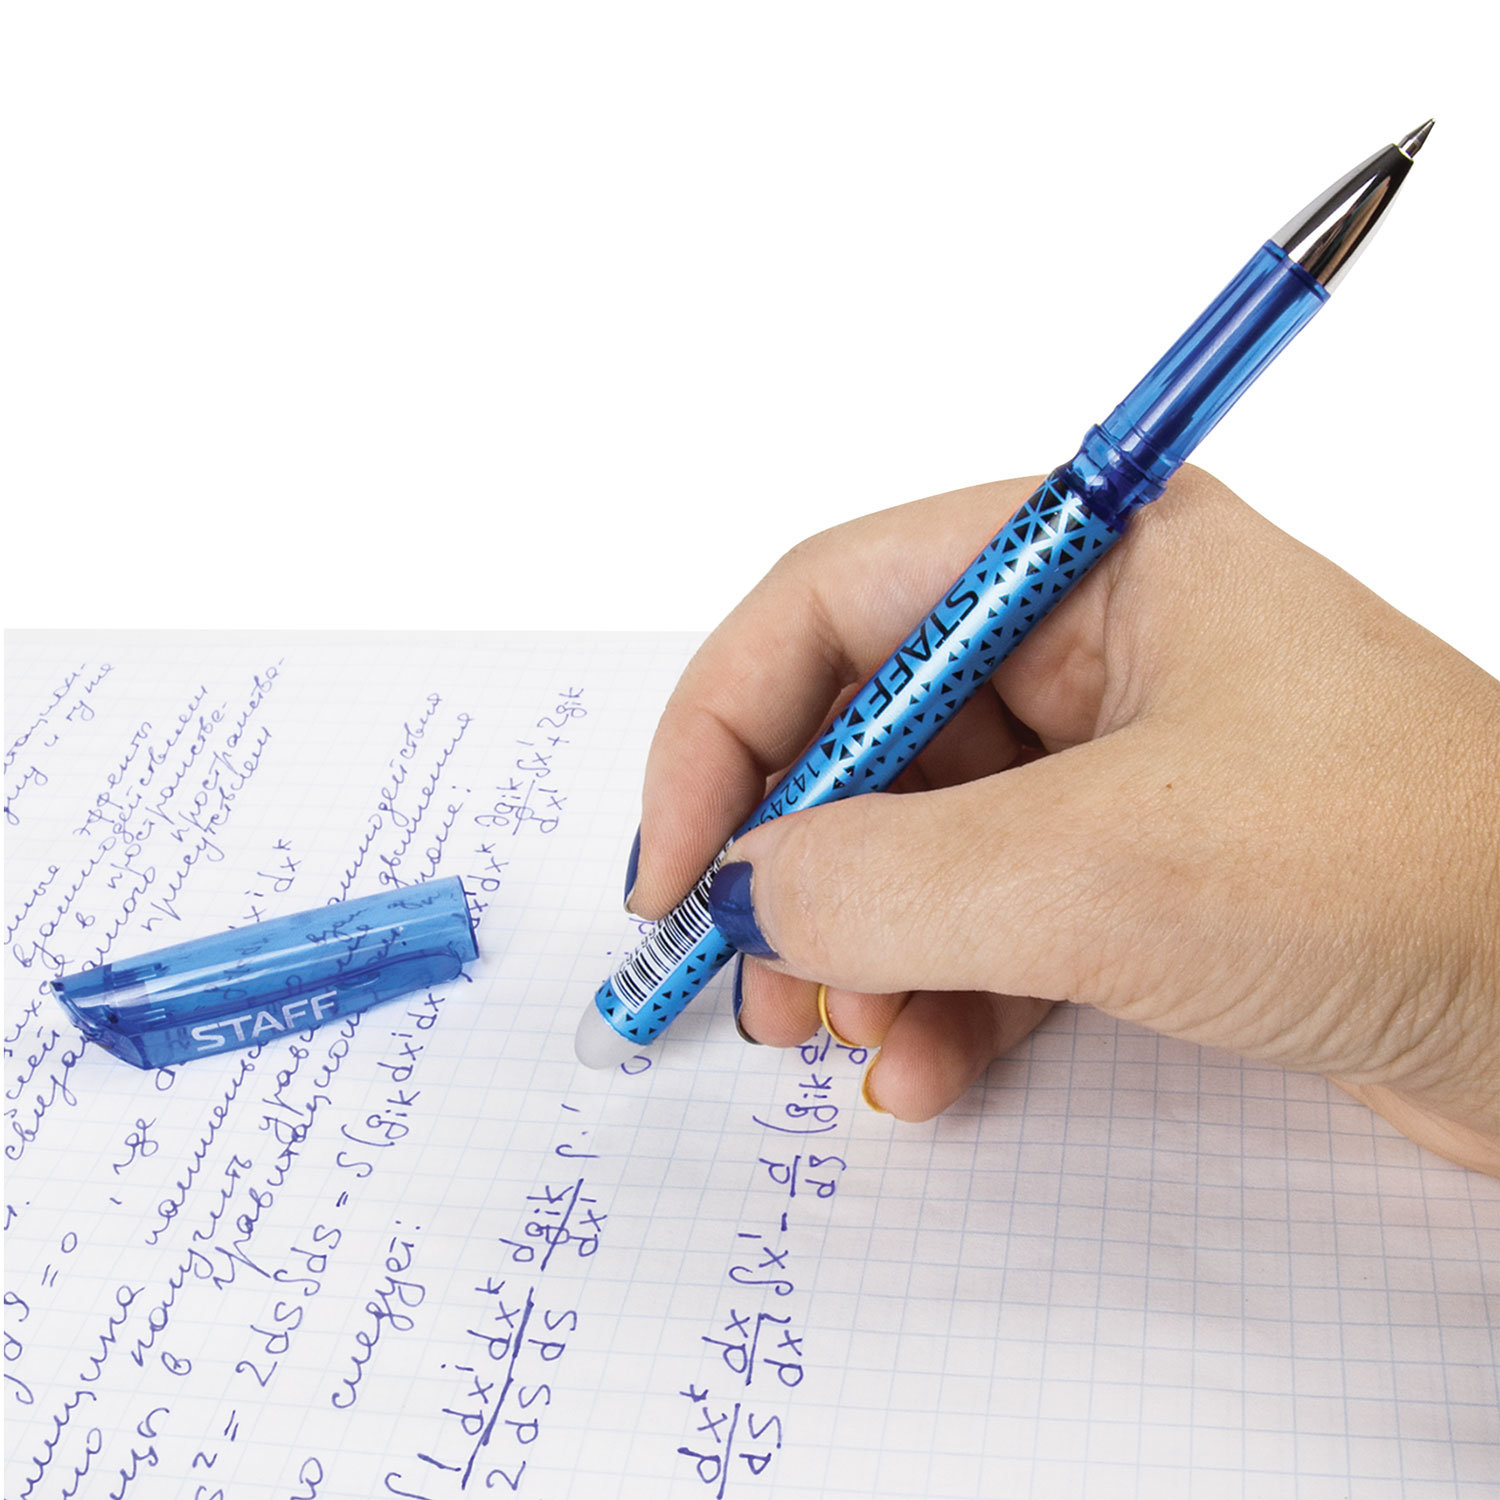 Что можно делать ручкой. Ручка гелевая staff. Ручка гелевая со стираемыми синими чернилами "staff" 0.5мм. Ручка стираемая шариковая Erasable Zebra пиши-стирай синяя. Гелевая ручка со стёркой.